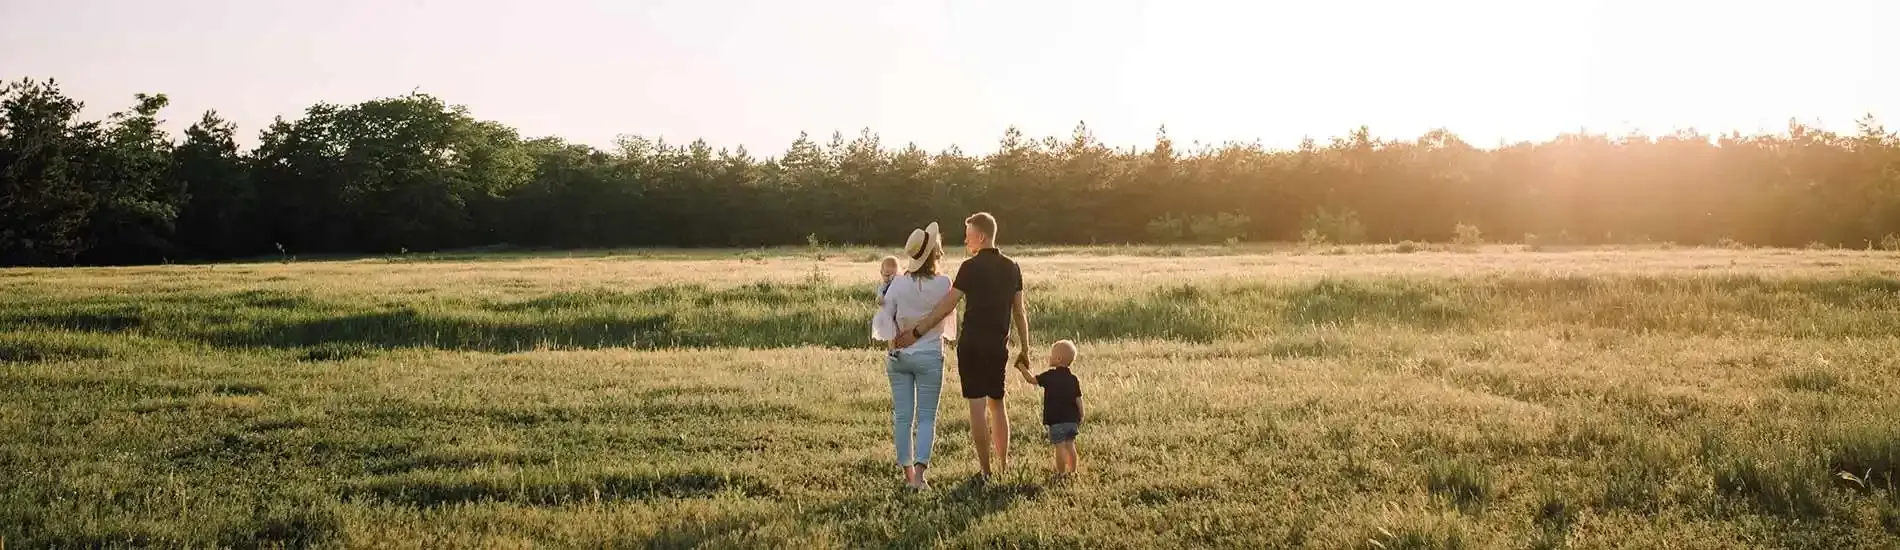 Family in a sunlit field